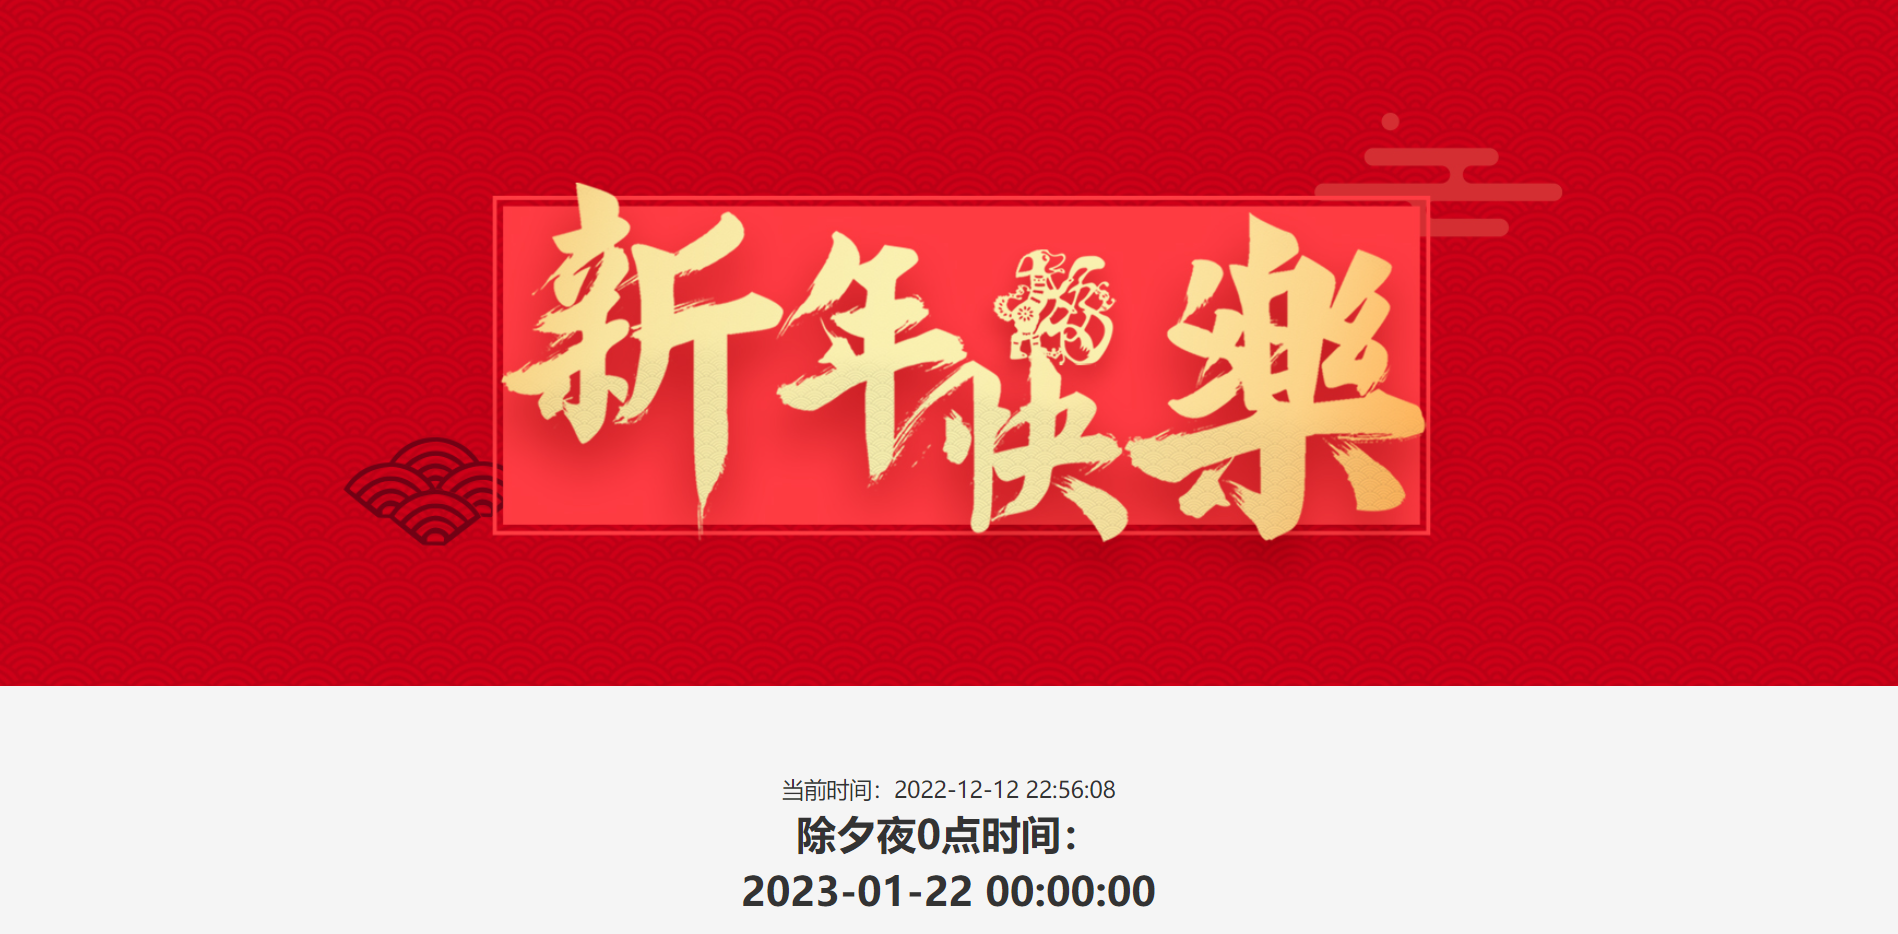 
2023春节倒计时新款HTML单页源码
-安生子-AnSheng
-第1
张图片